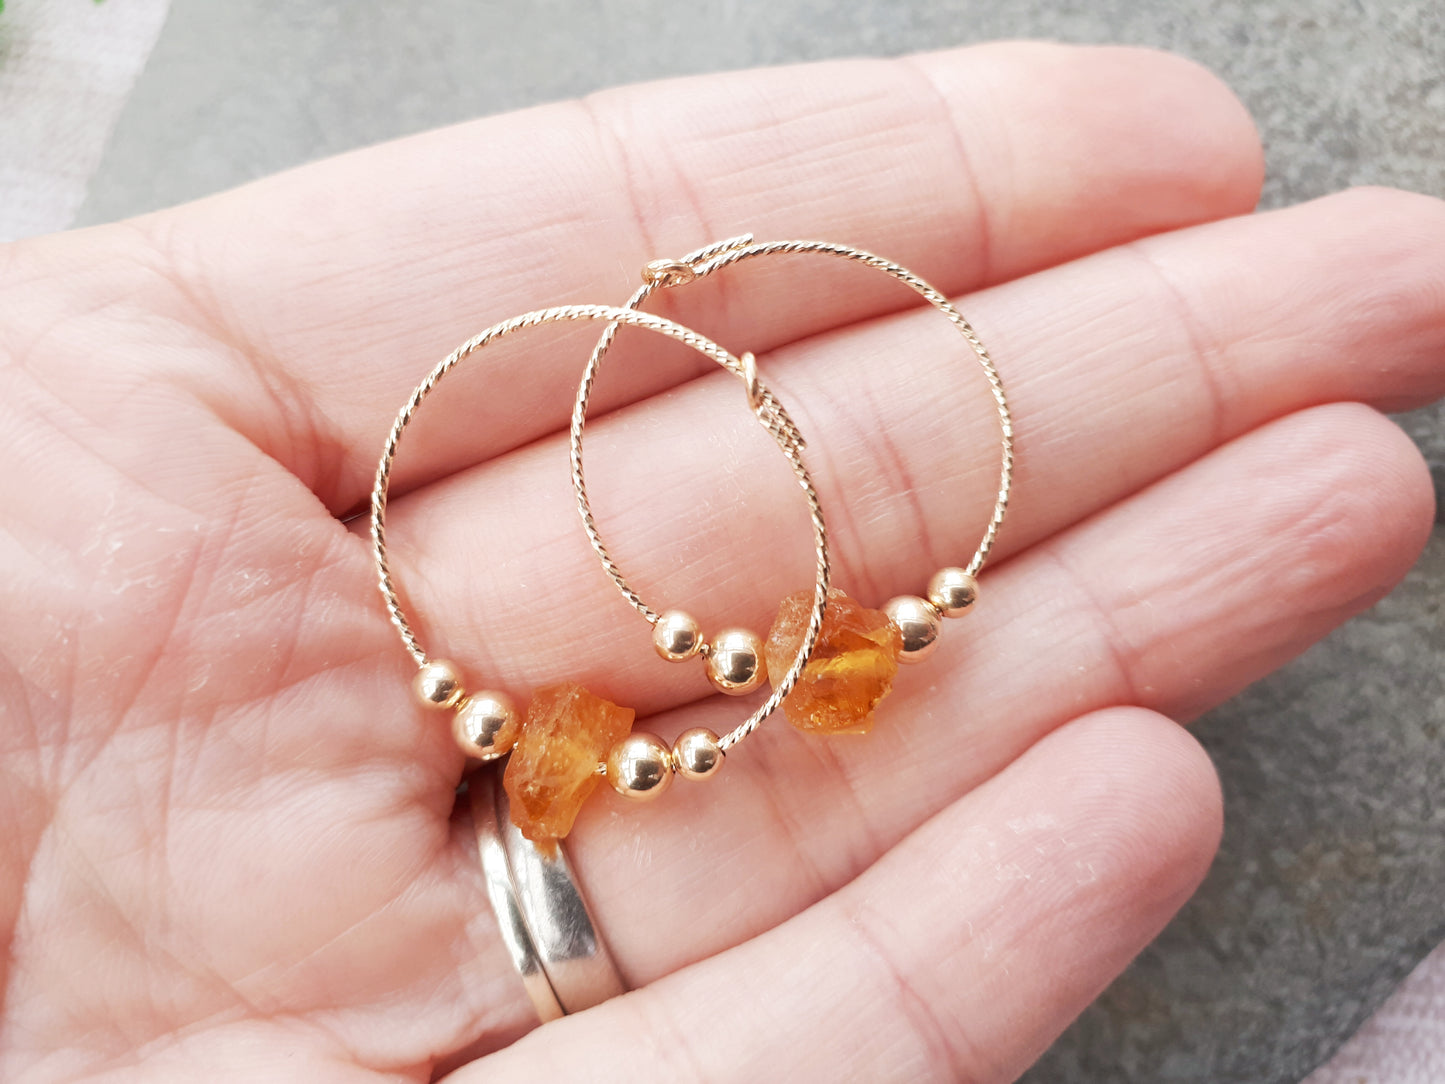 Raw citrine hoop earrings in gold filled sterling silver. November birthstone earrings.